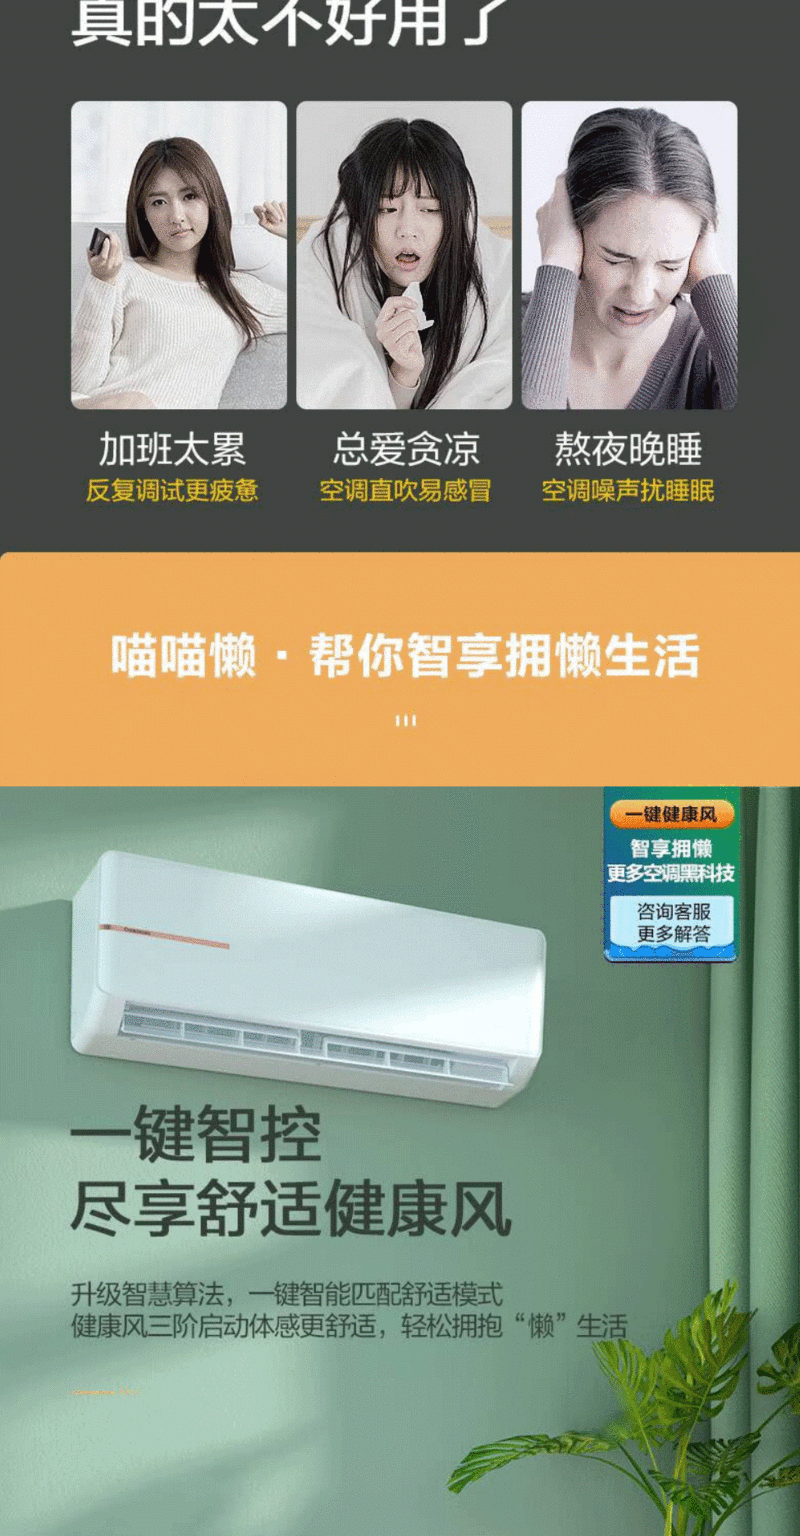 长虹/CHANGHONG 新三级2匹冷暖变频挂机26GW/ZDTCW1+R1